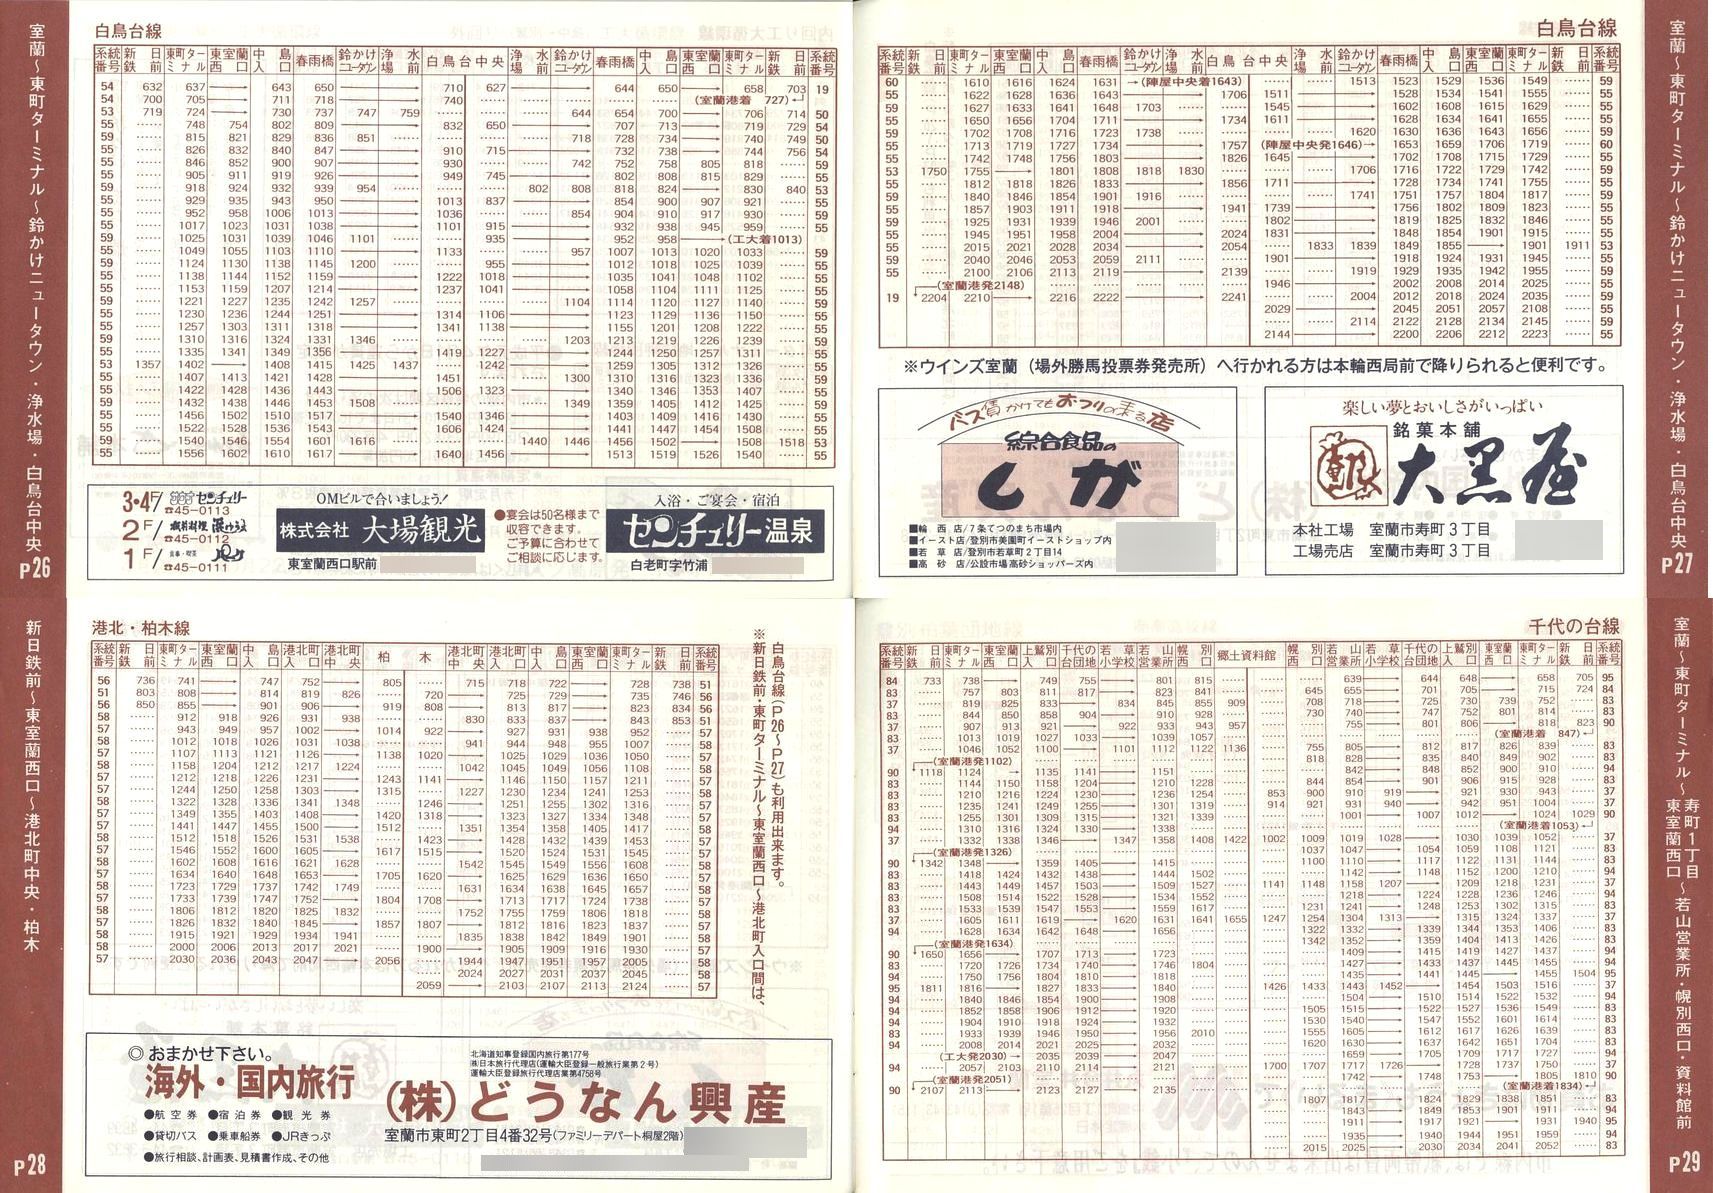 1989-04-01改正_道南バス_室蘭市内線冊子時刻表26-29